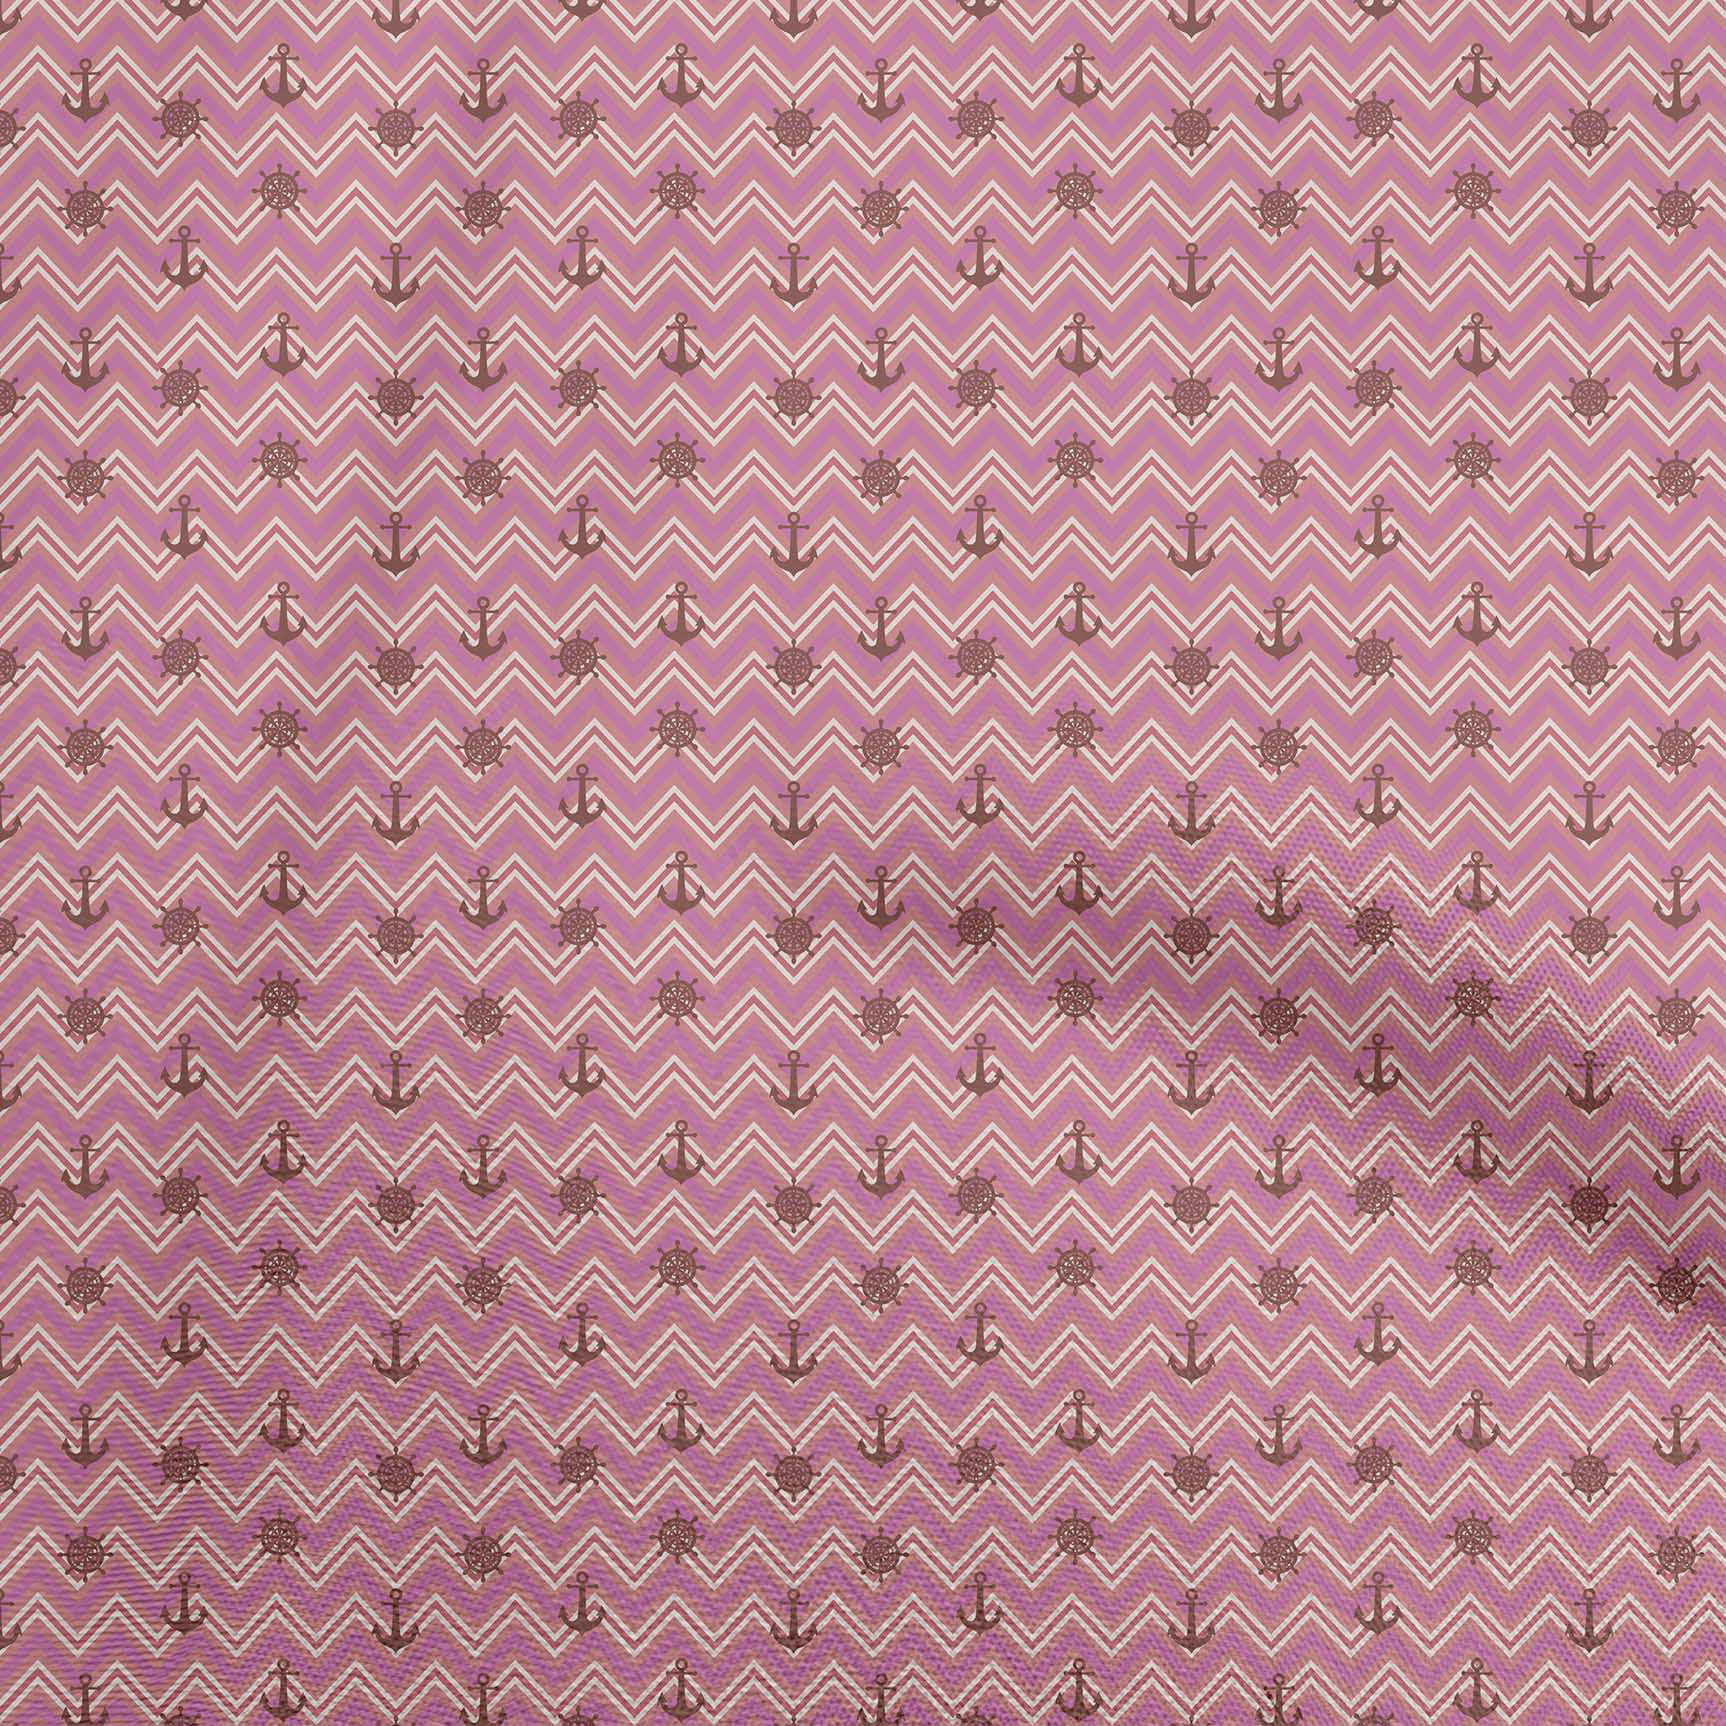 Springs Global 100% Cotton fabric Quilting Craft Orange Pink Diaganol Stripe 